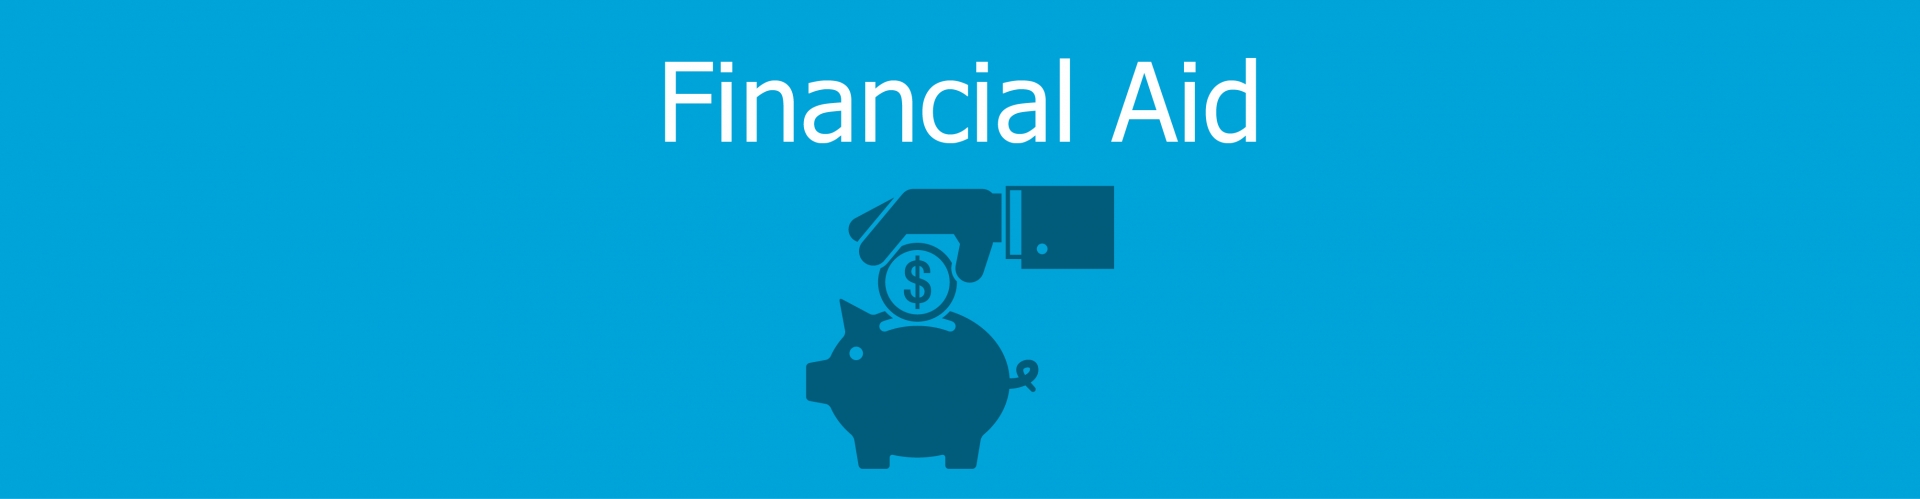 Financial Aid banner